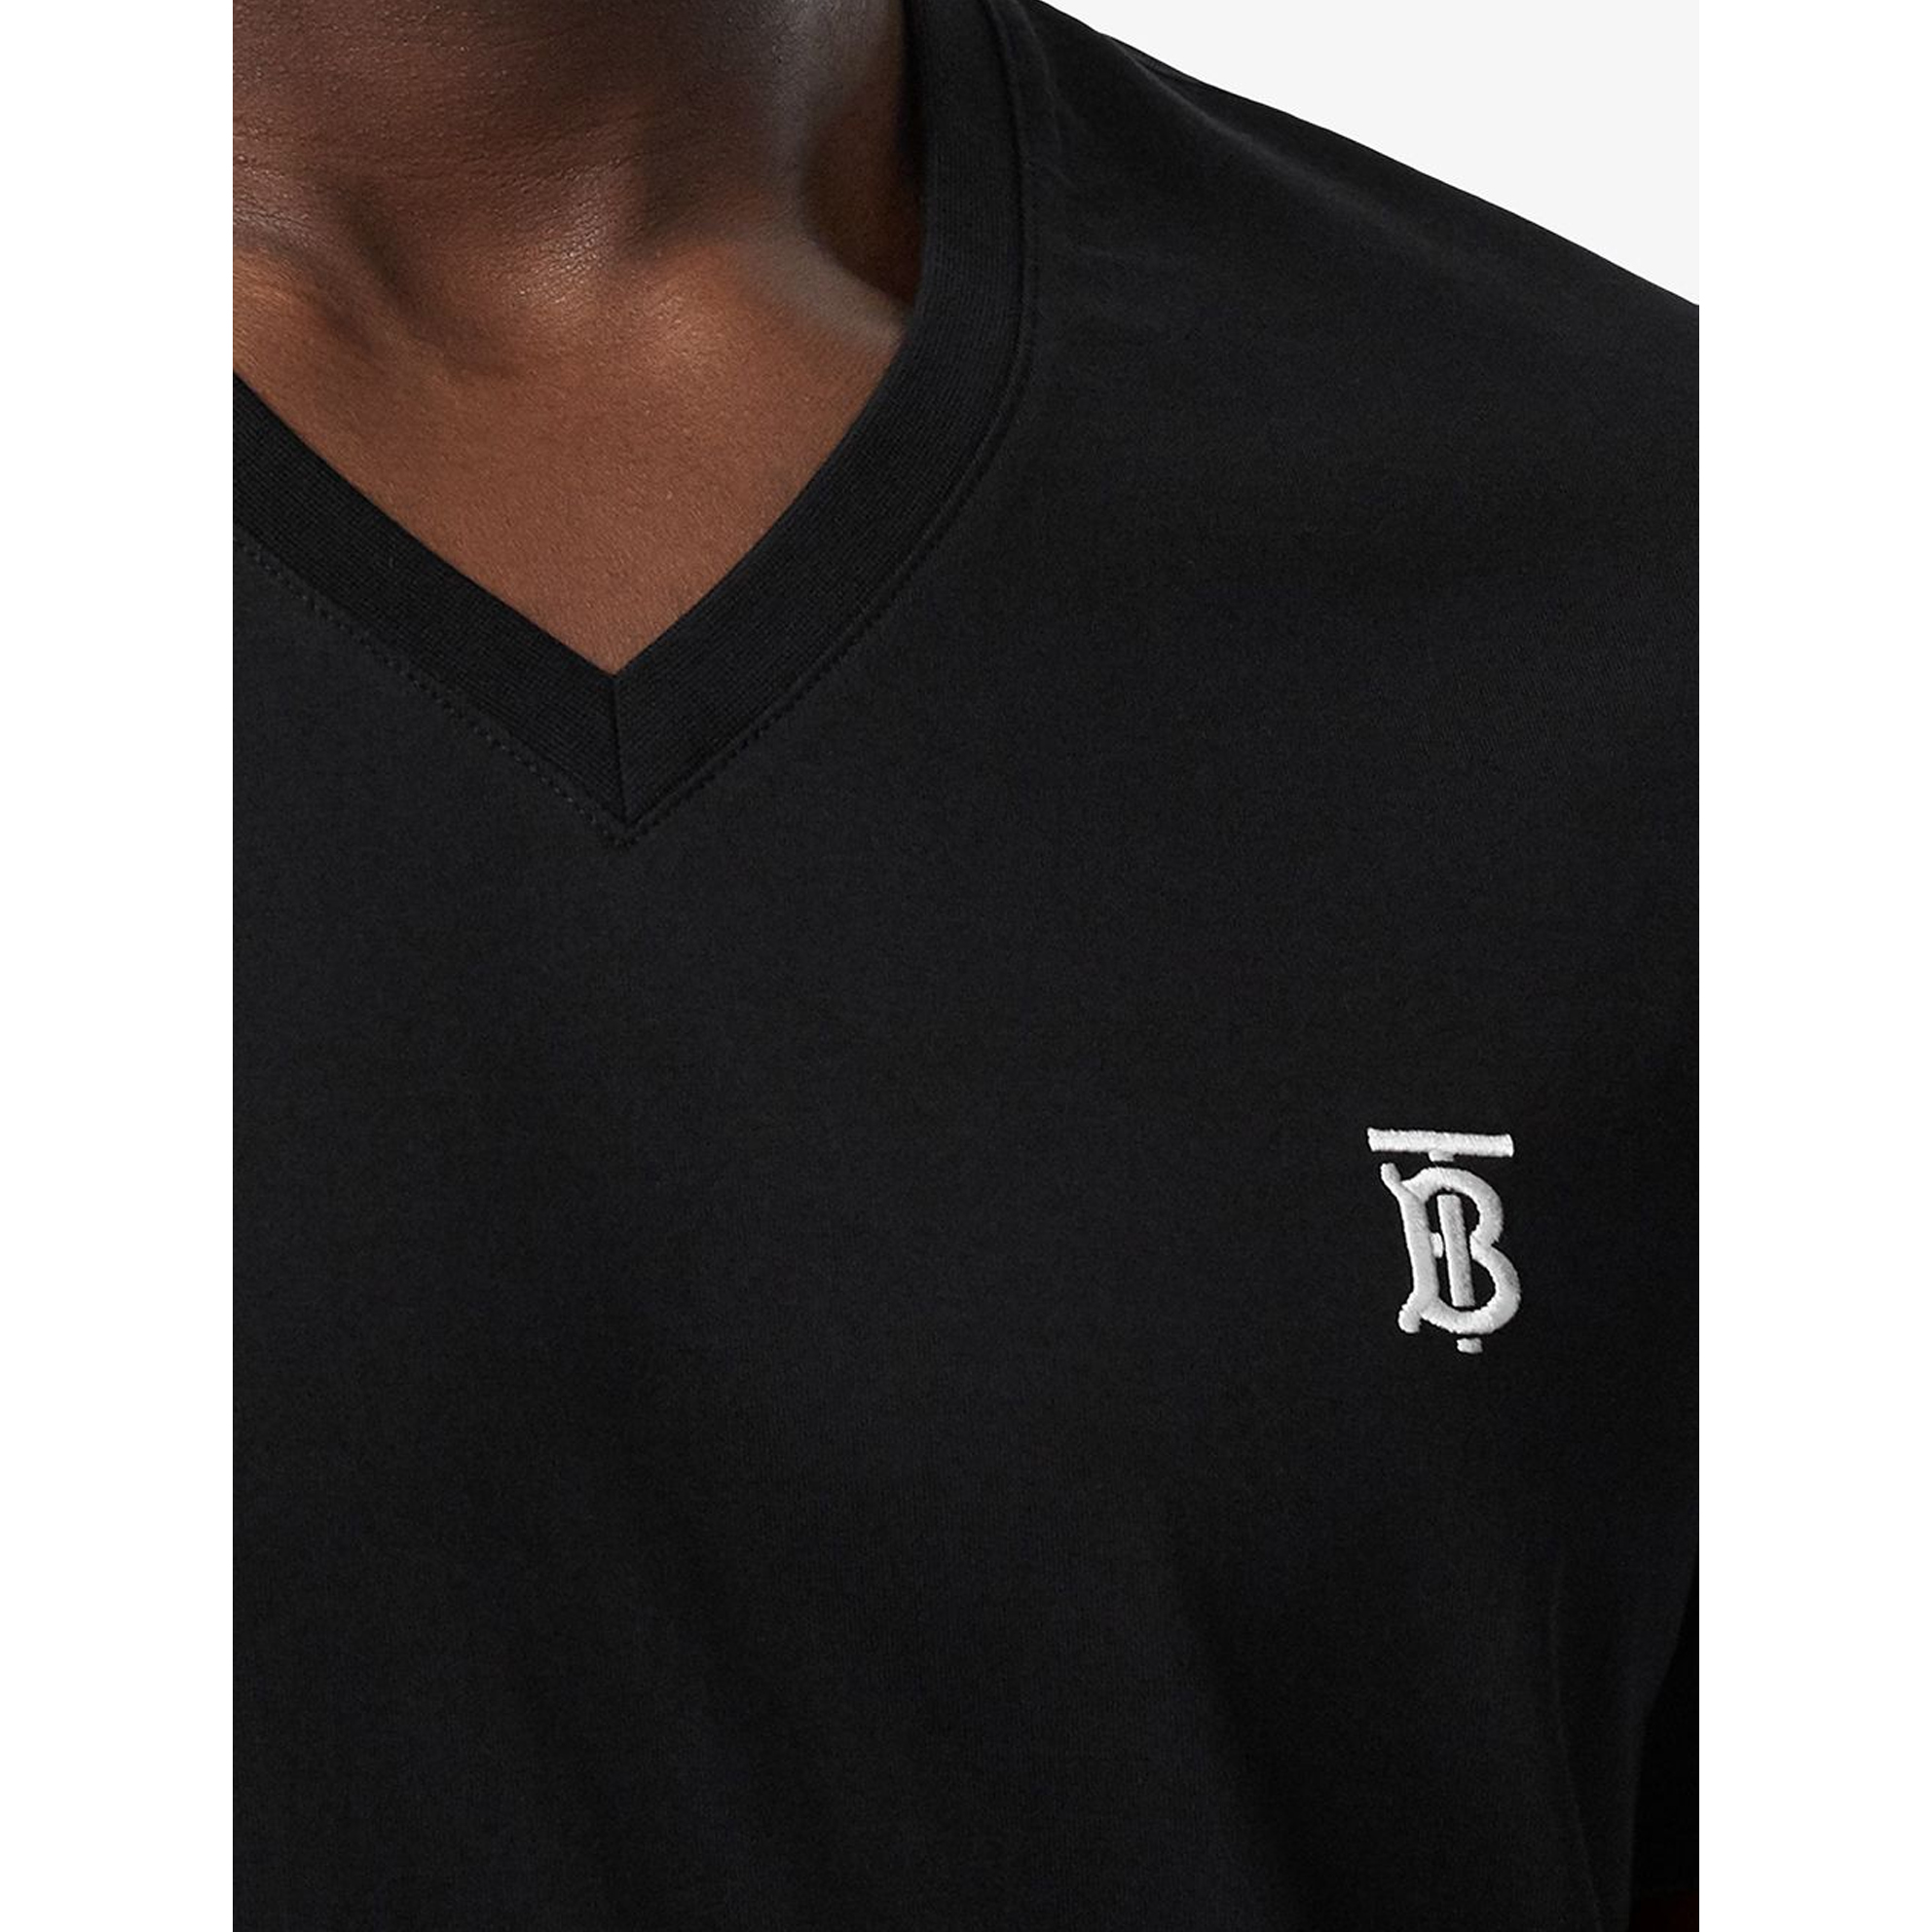 Image 5 of バーバリーVネック Tシャツ MARLET マーレット ブラック メンズ 8017255 BLK オーバーサイズ